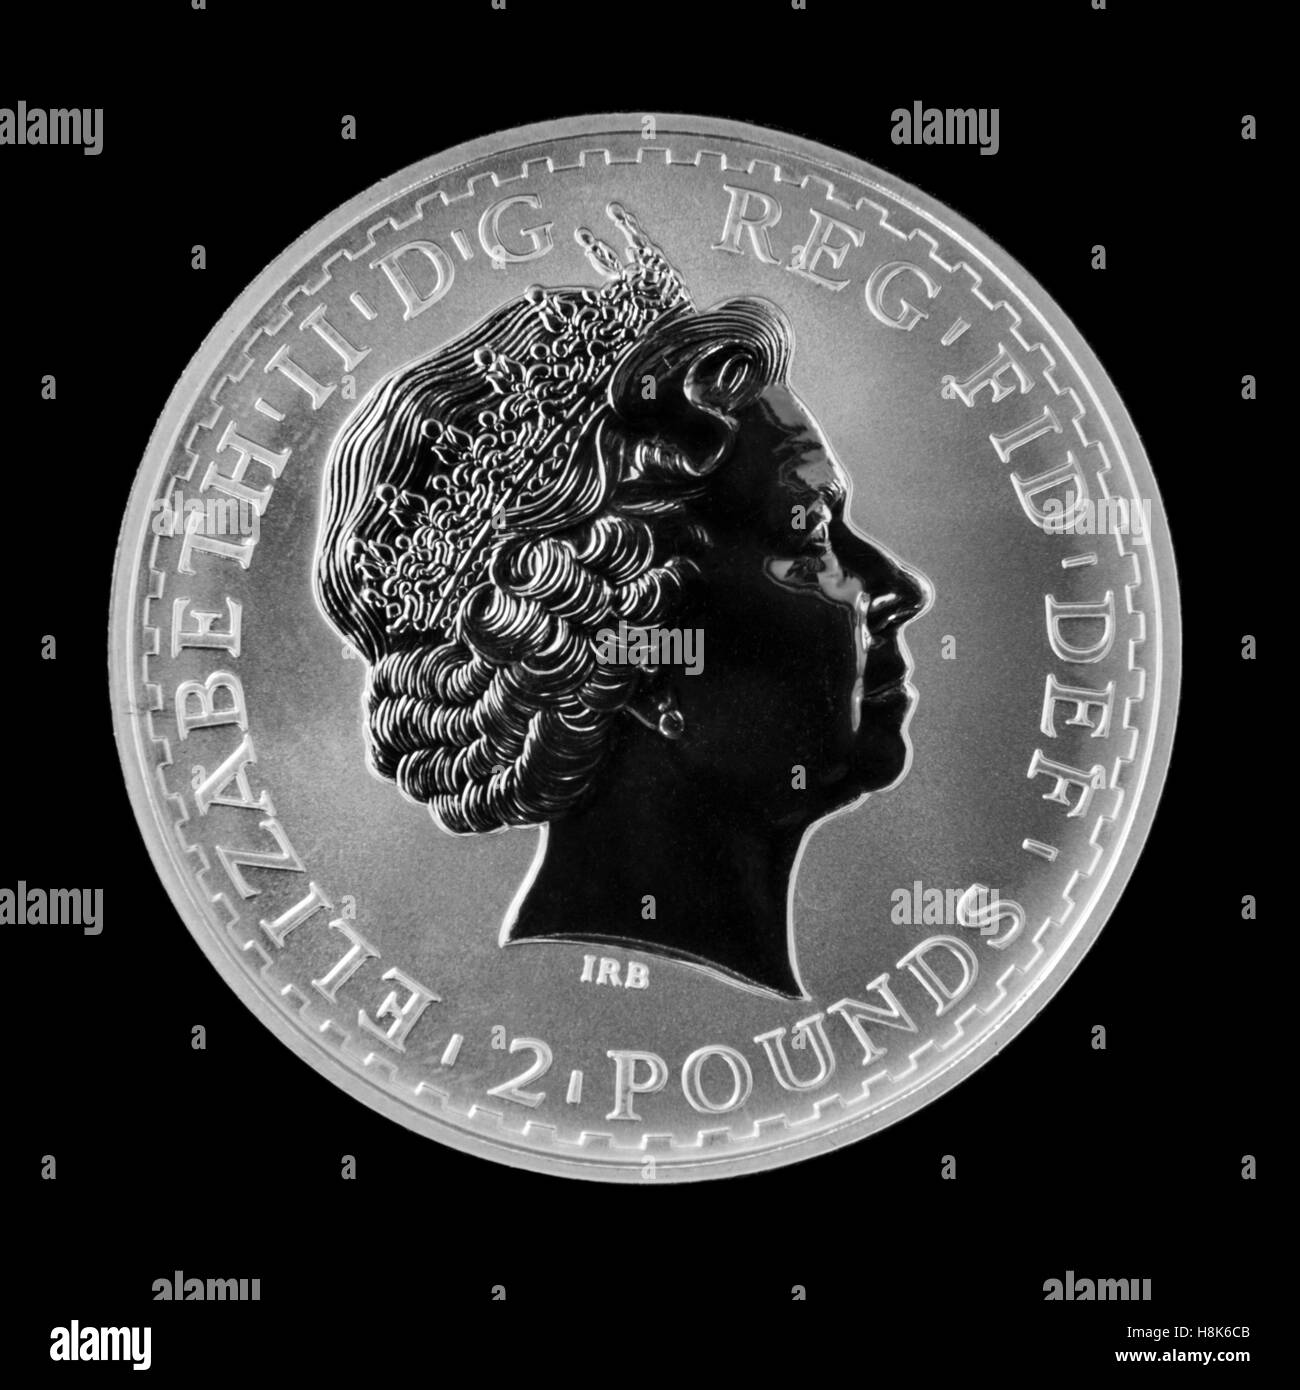 Königliche Minze 1999 Brittania Silber 2 £ Anlagemünze, ausgestellt in einer limitierten Auflage von 100.000 Stockfoto